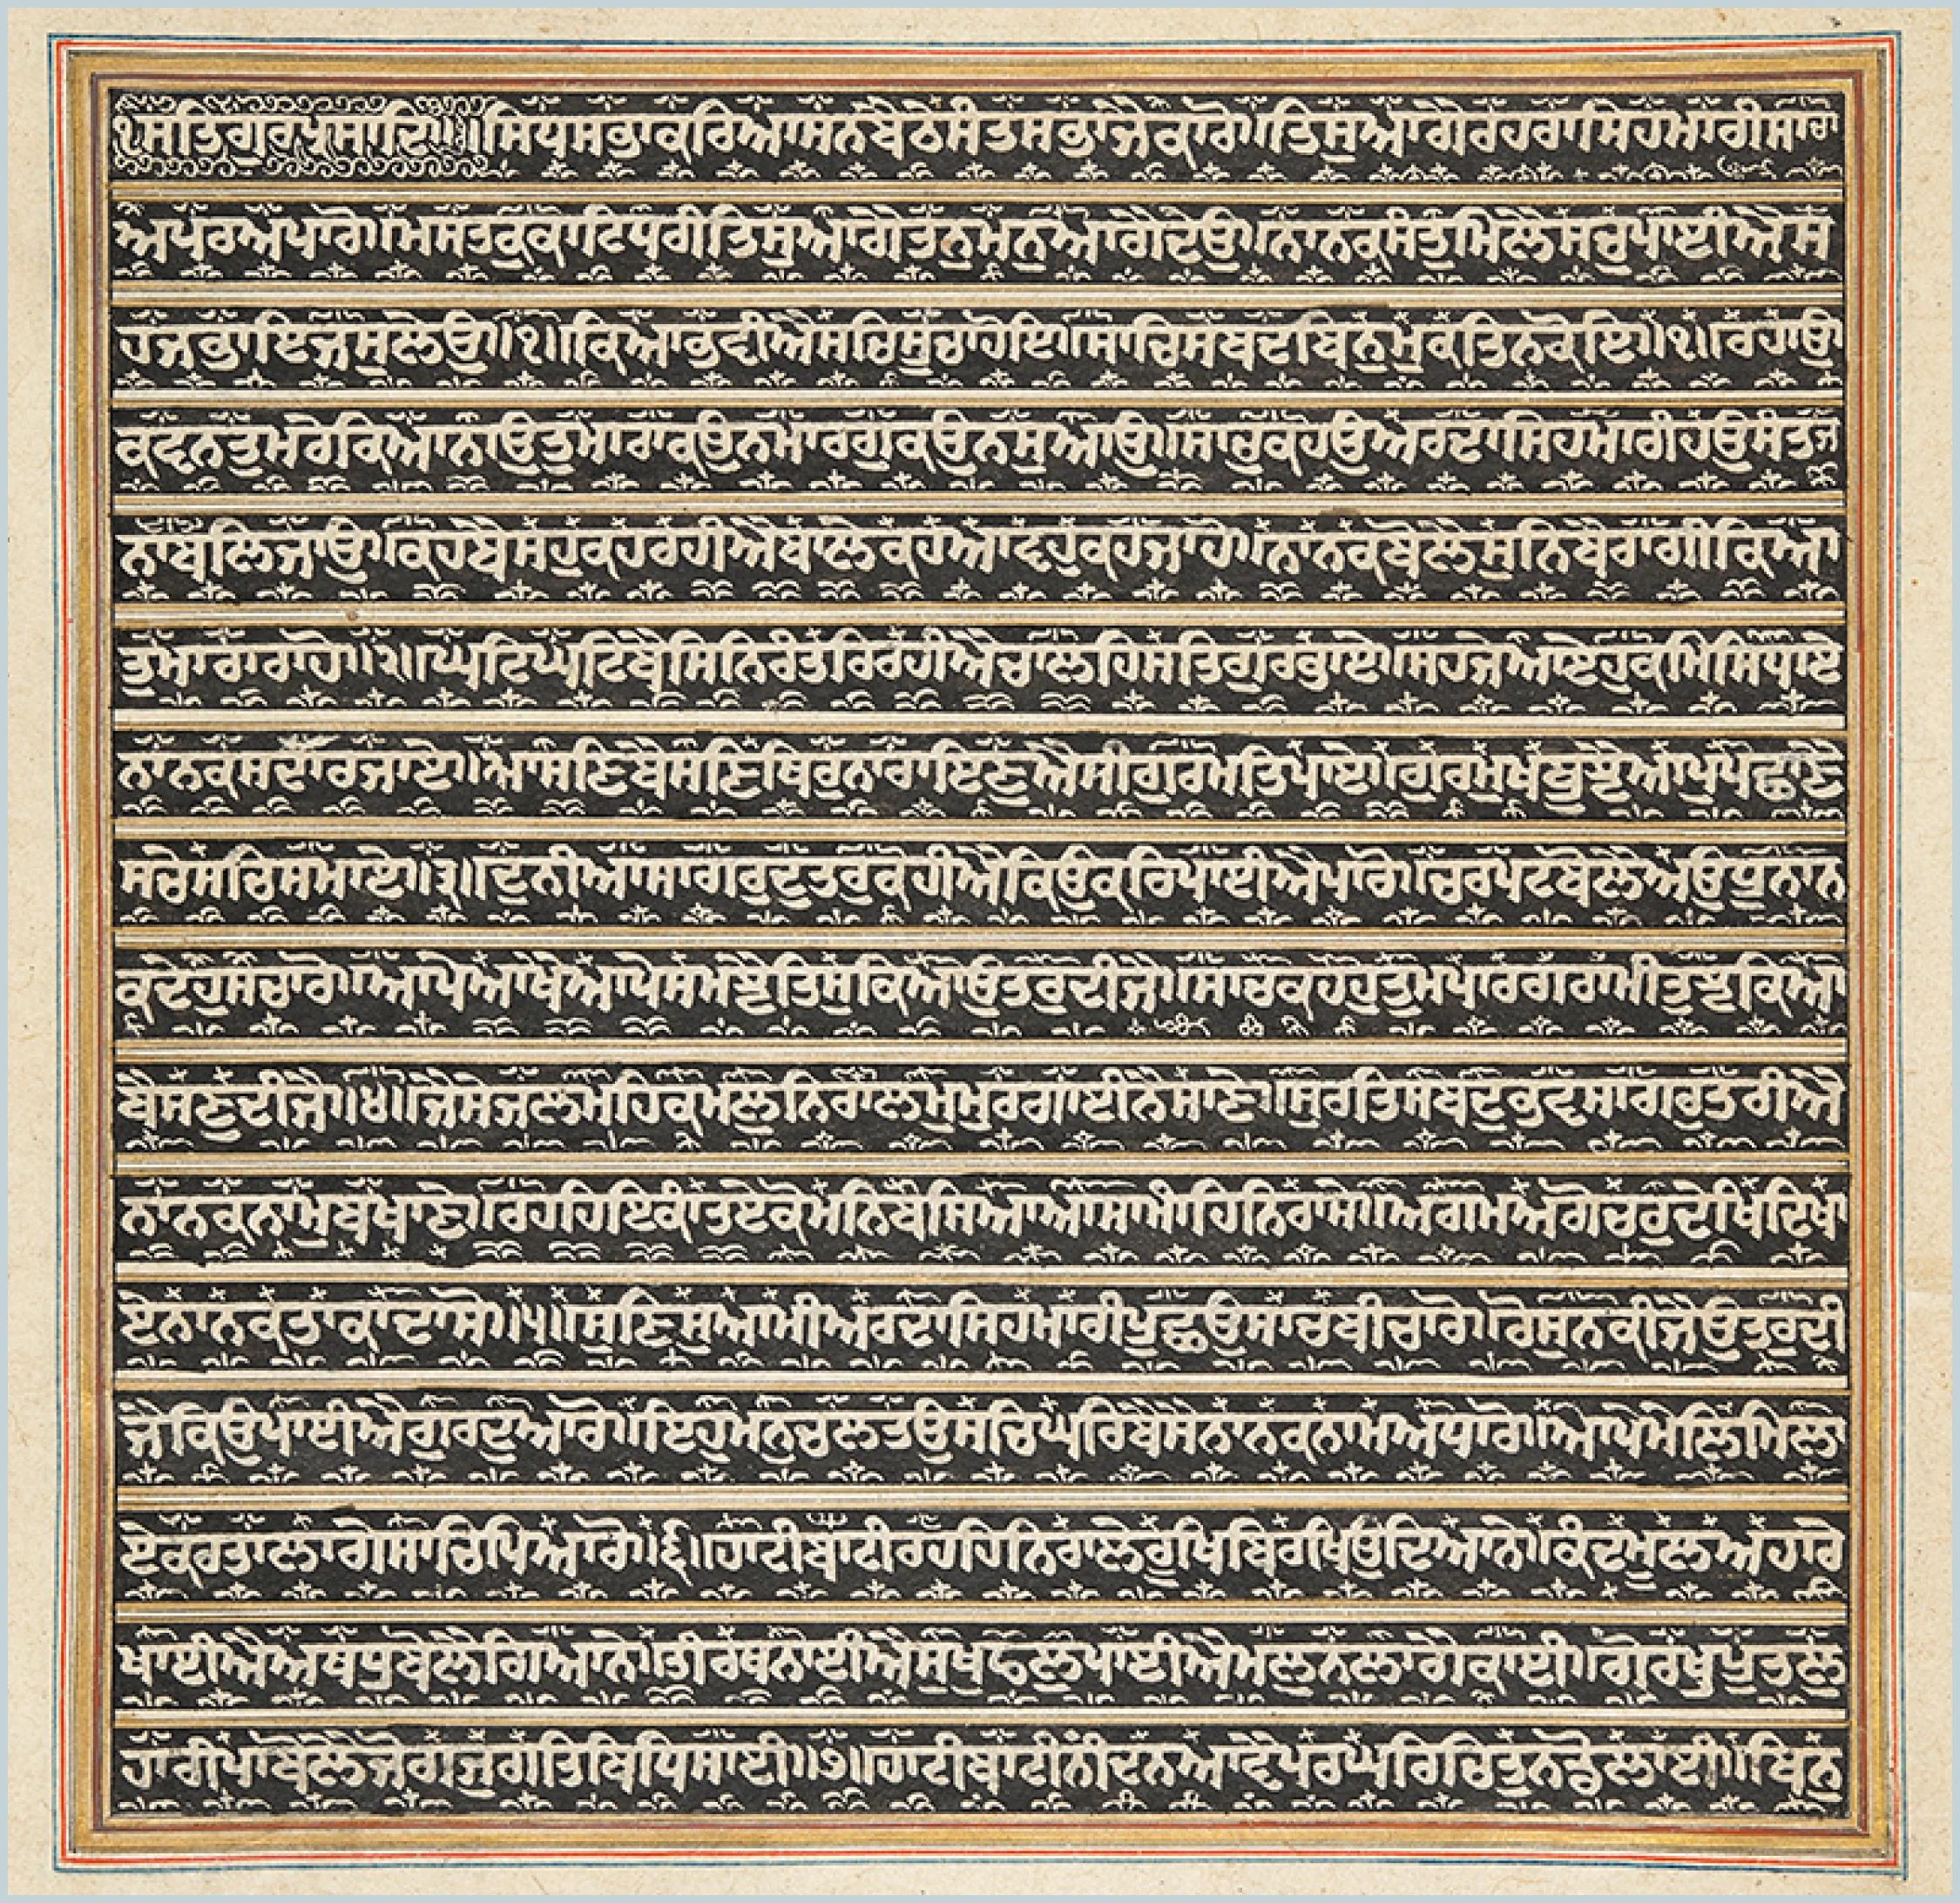 Photograph of handwritten text in Gurmukhi script